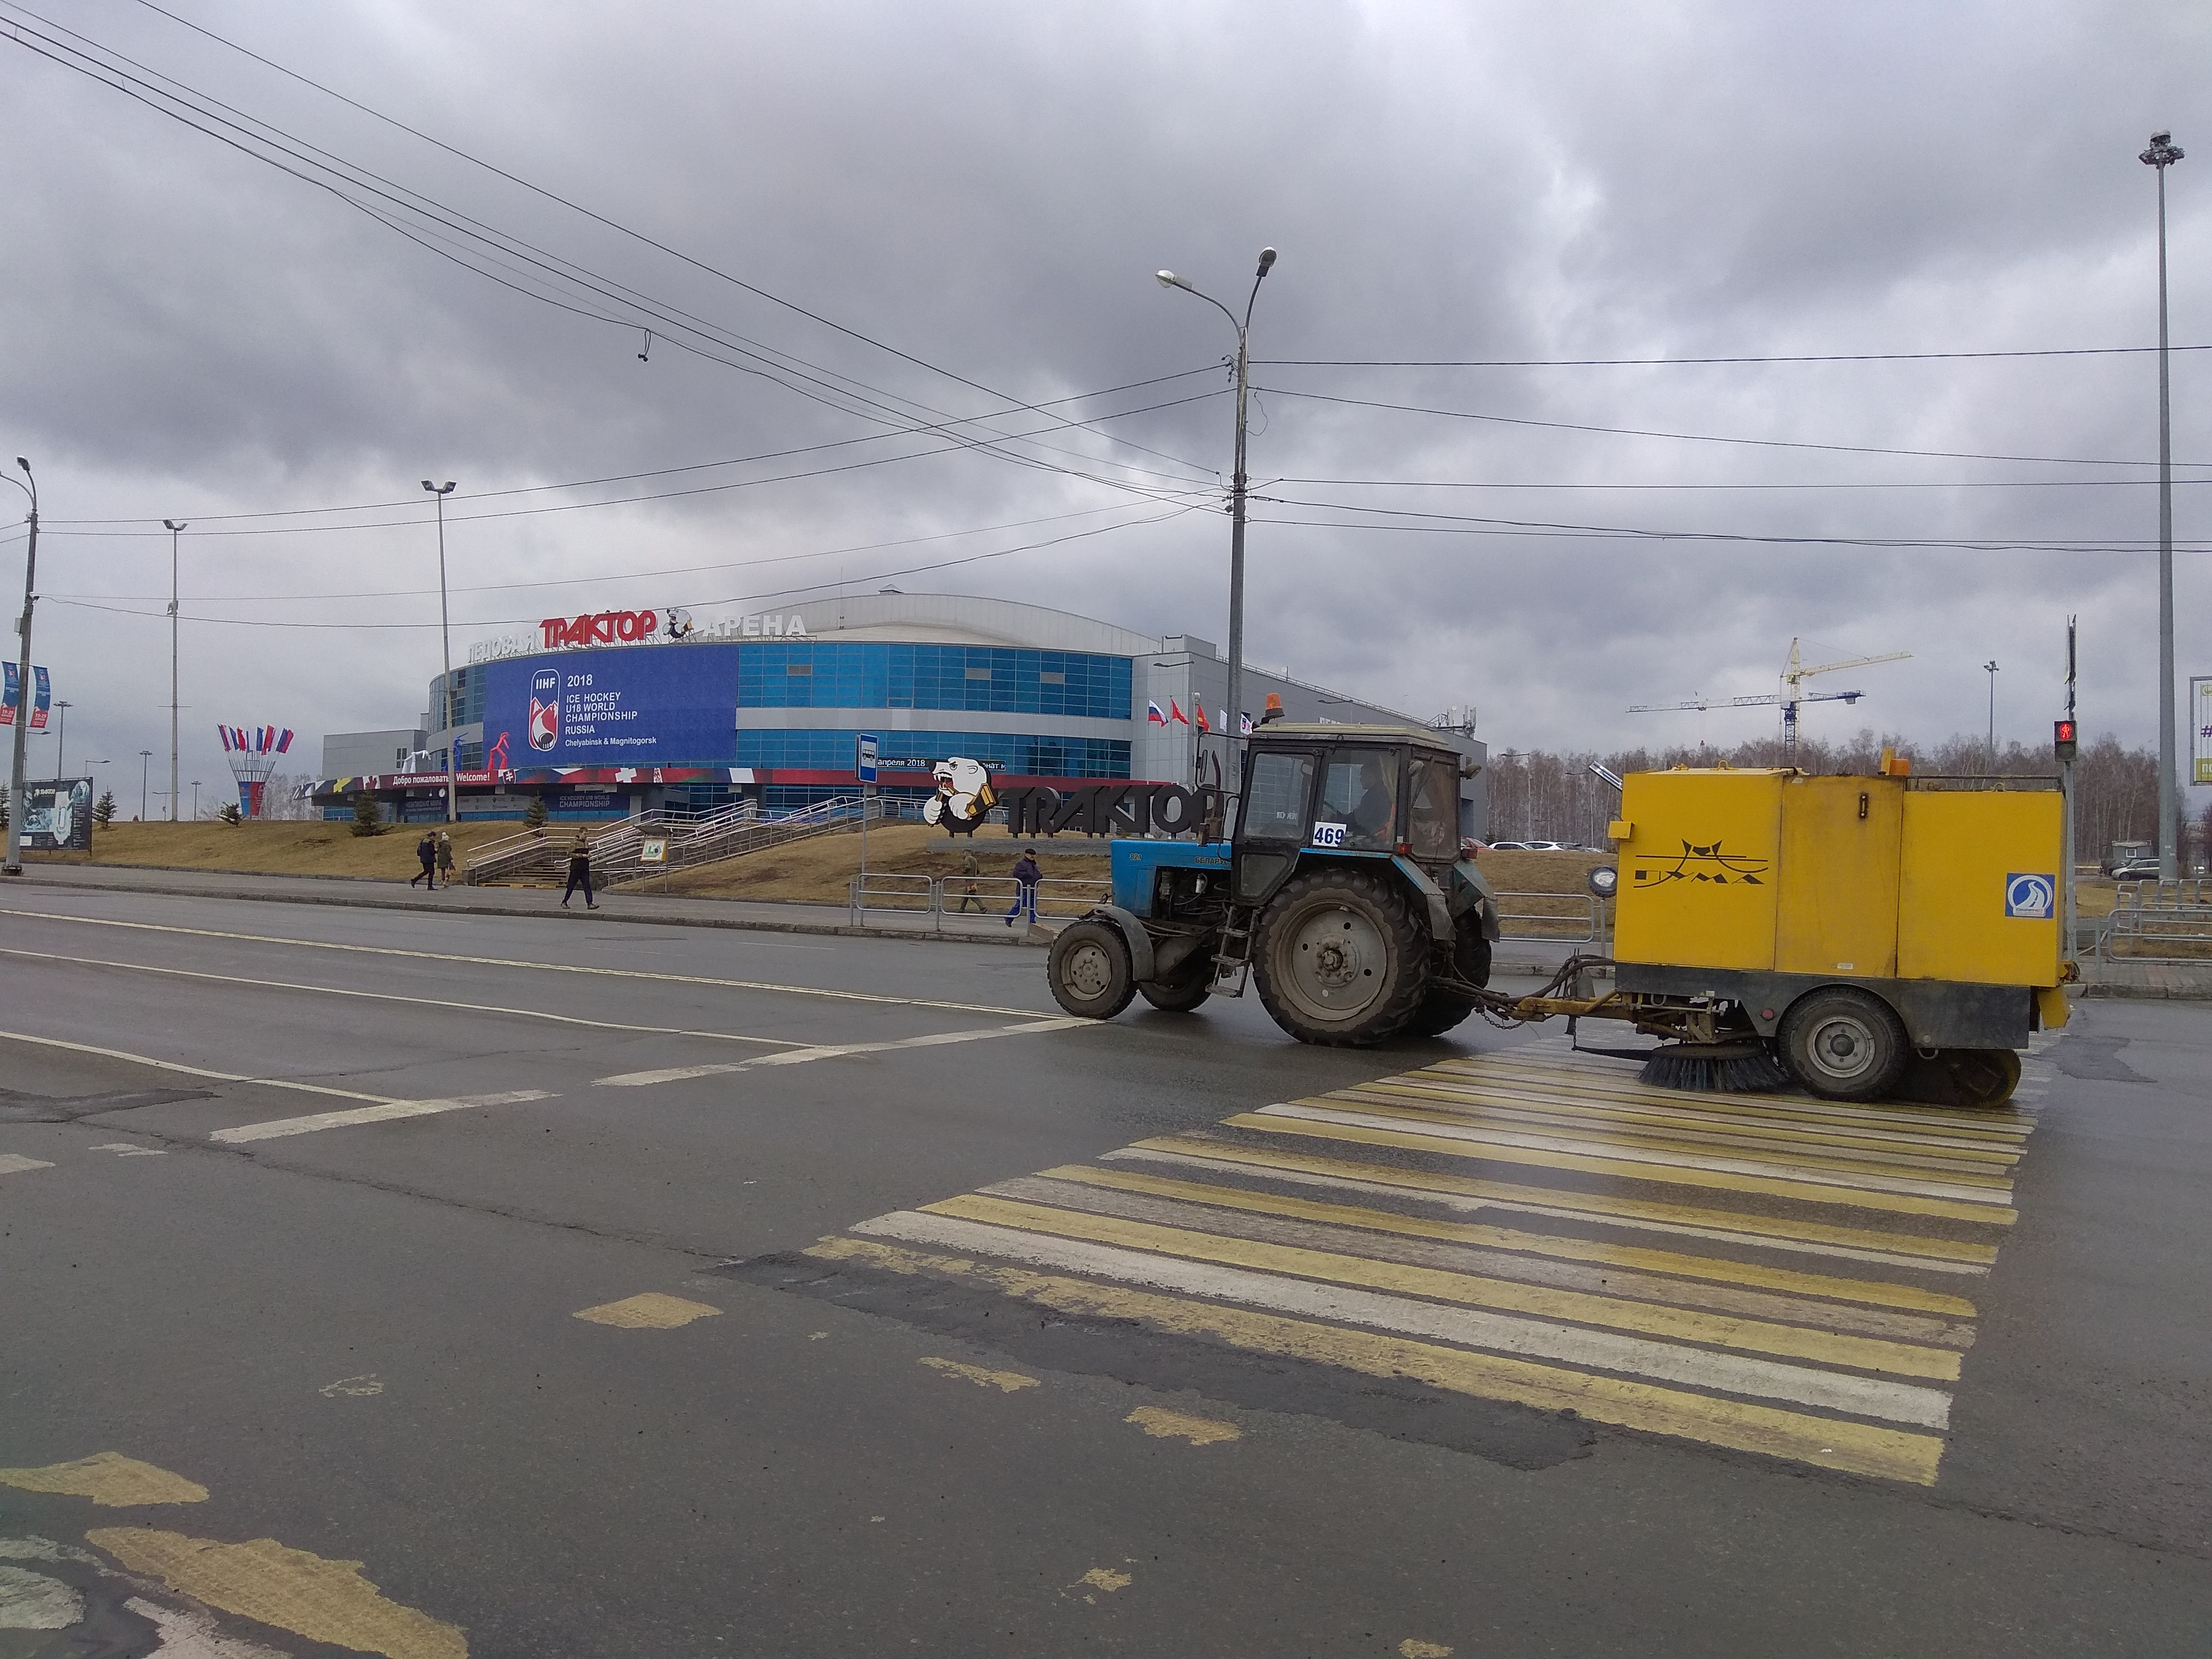 Traktor aréna s traktorem. Mimochodem: název Traktor Čeljabinsk je proto, protože první stadion klubu byl postaven na místě, kde původně stála továrna na traktory.